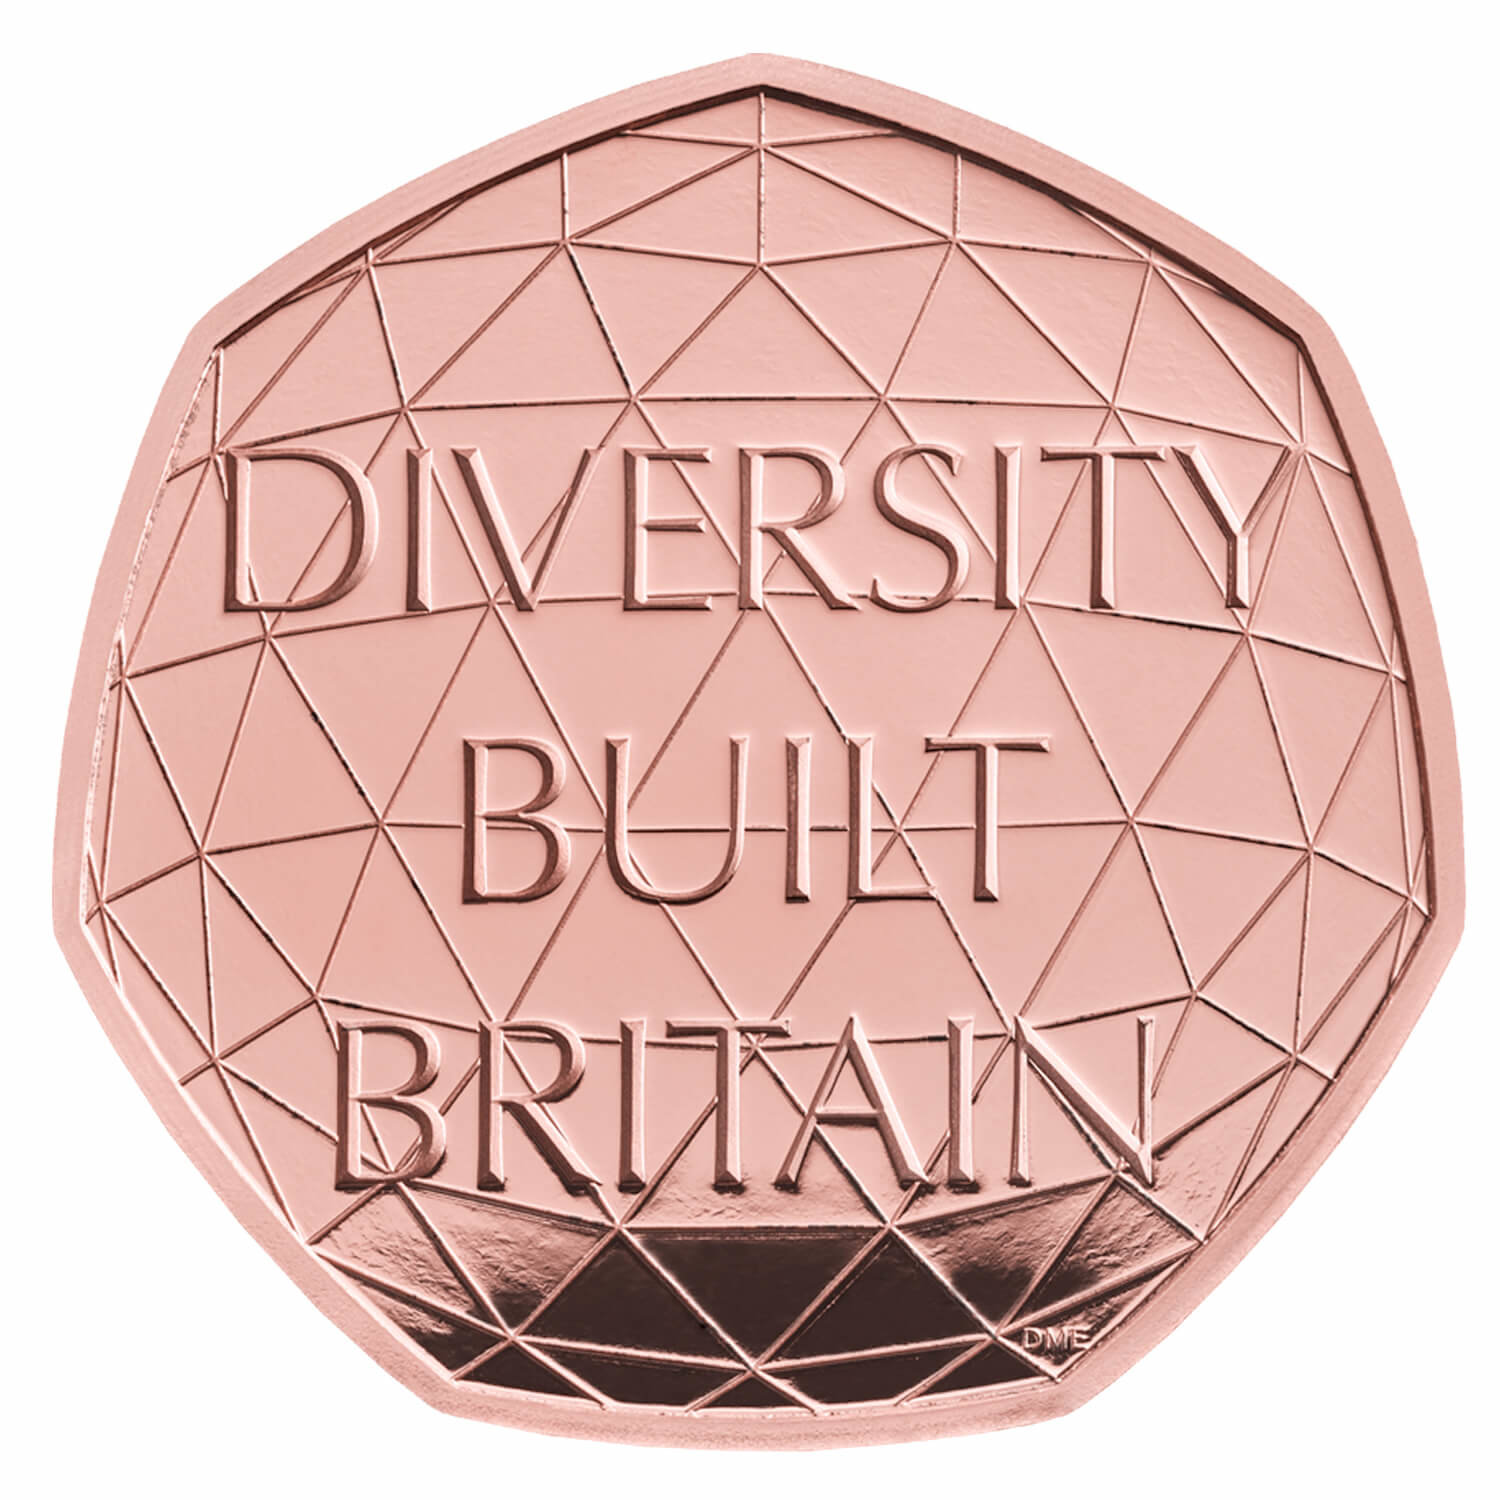 Diversity Built Britain 50p Coin